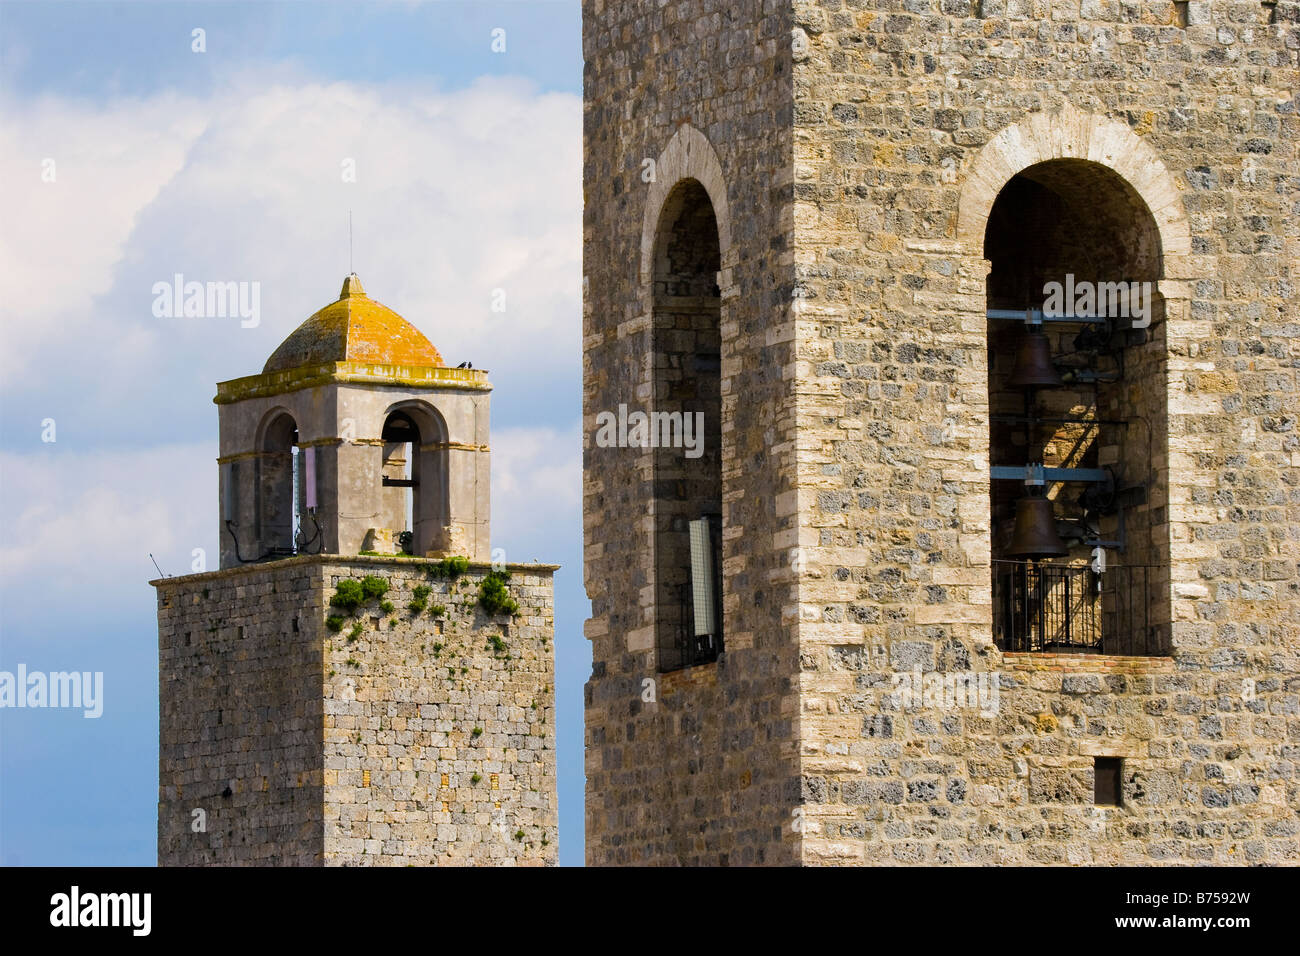 Deux clochers en pierre dans la ville de San Gimignano en Toscane Italie Banque D'Images